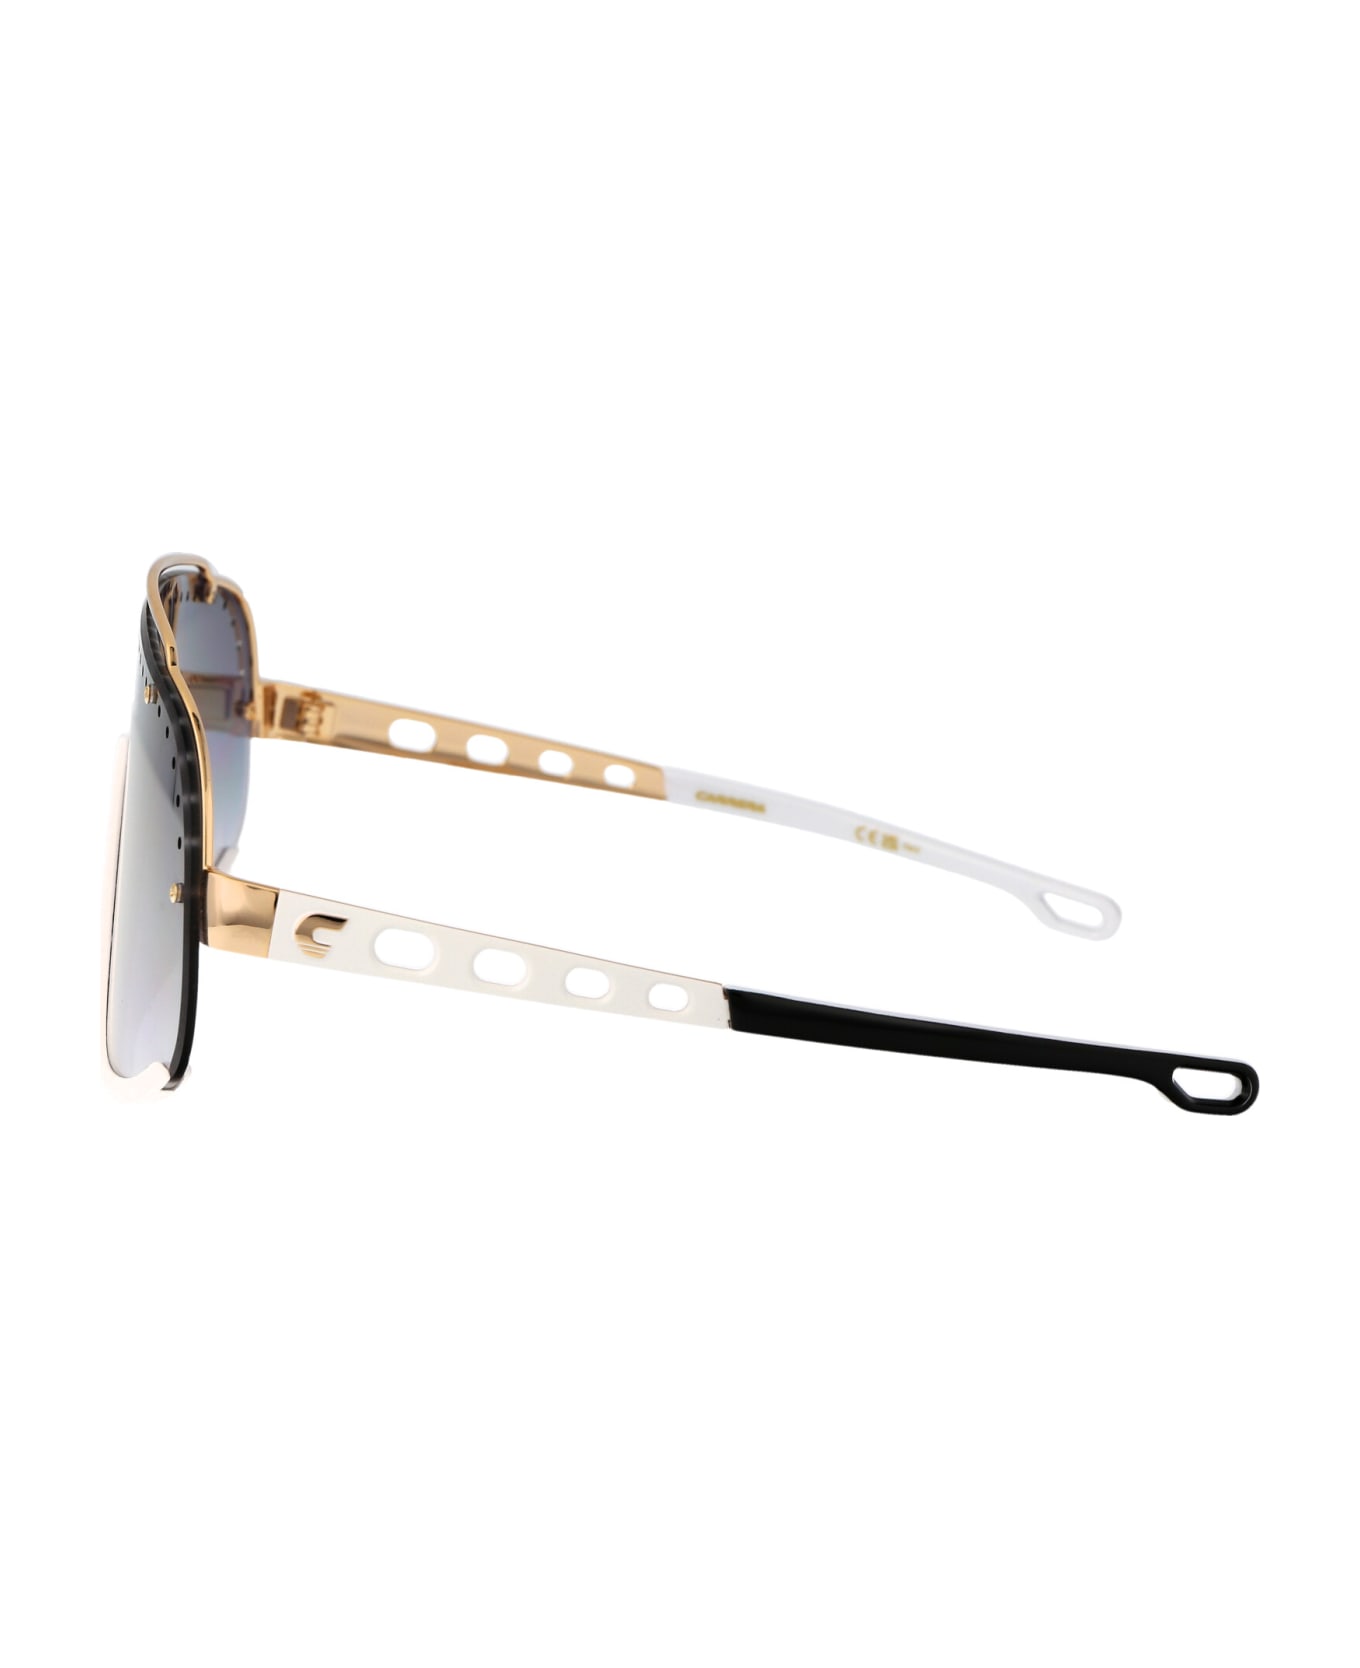 Carrera Flaglab 16 Sunglasses - KY21V BLUE GOLD